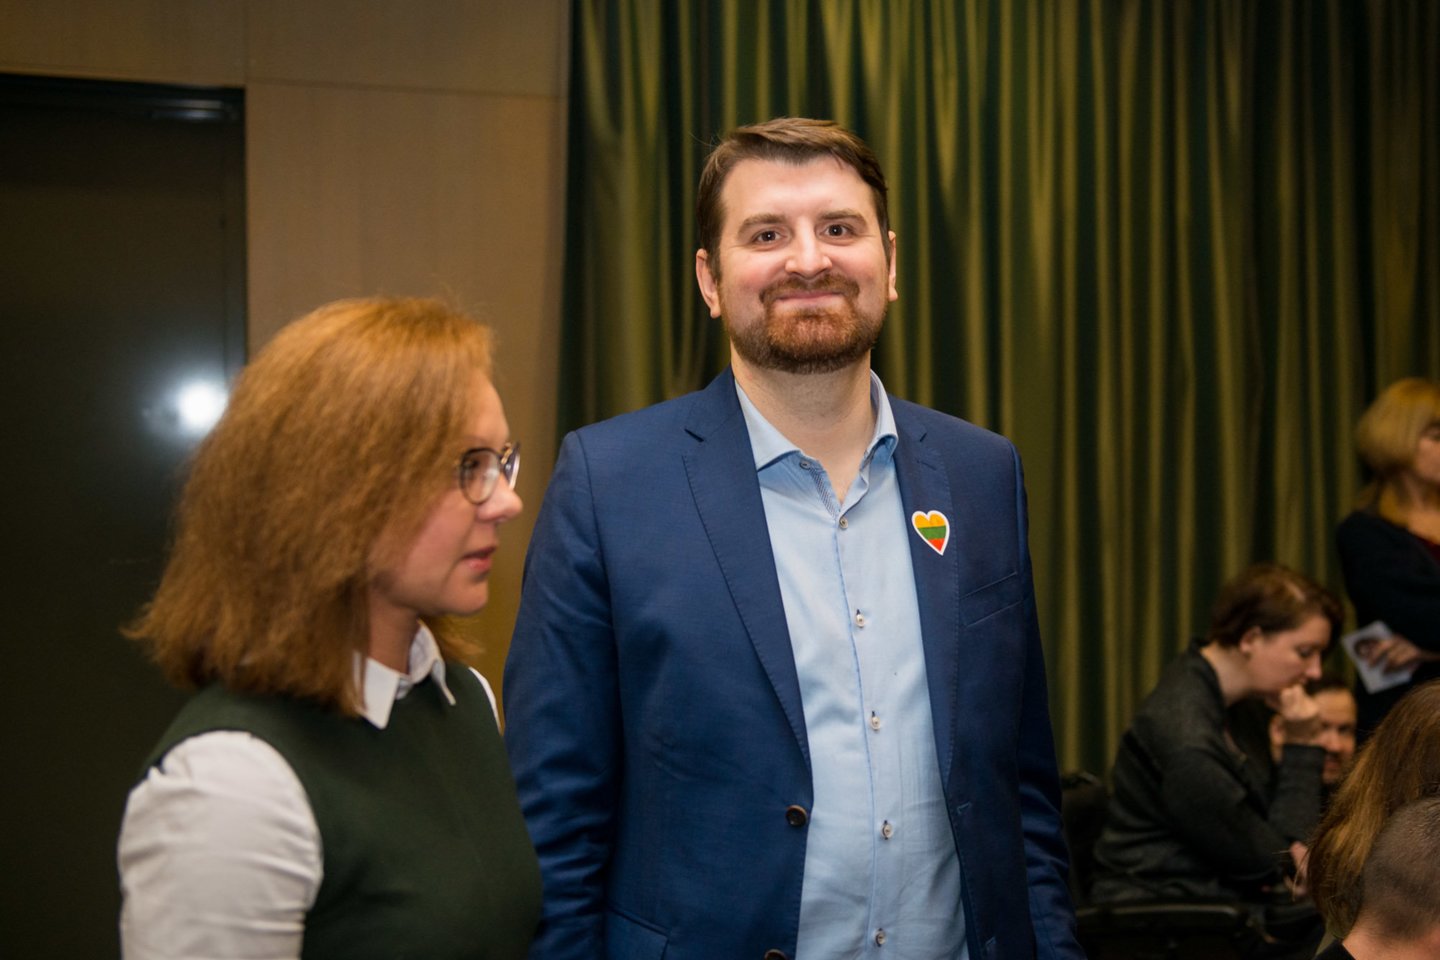  „Rengiame pirmąjį didelį bendraminčių ir bendražygių susitikimą - Lietuvos konferenciją, kurioje duosime startą naujos liberalios politinės partijos kūrimui. Tai žmonės, kurie nori atverti naują puslapį Lietuvos politikoje - atvirą, optimistinį, laisvą ir drąsiai žiūrintį į priekį“, - kalbėjo A. Armonaitė. <br> J.Stacevičiaus nuotr. 